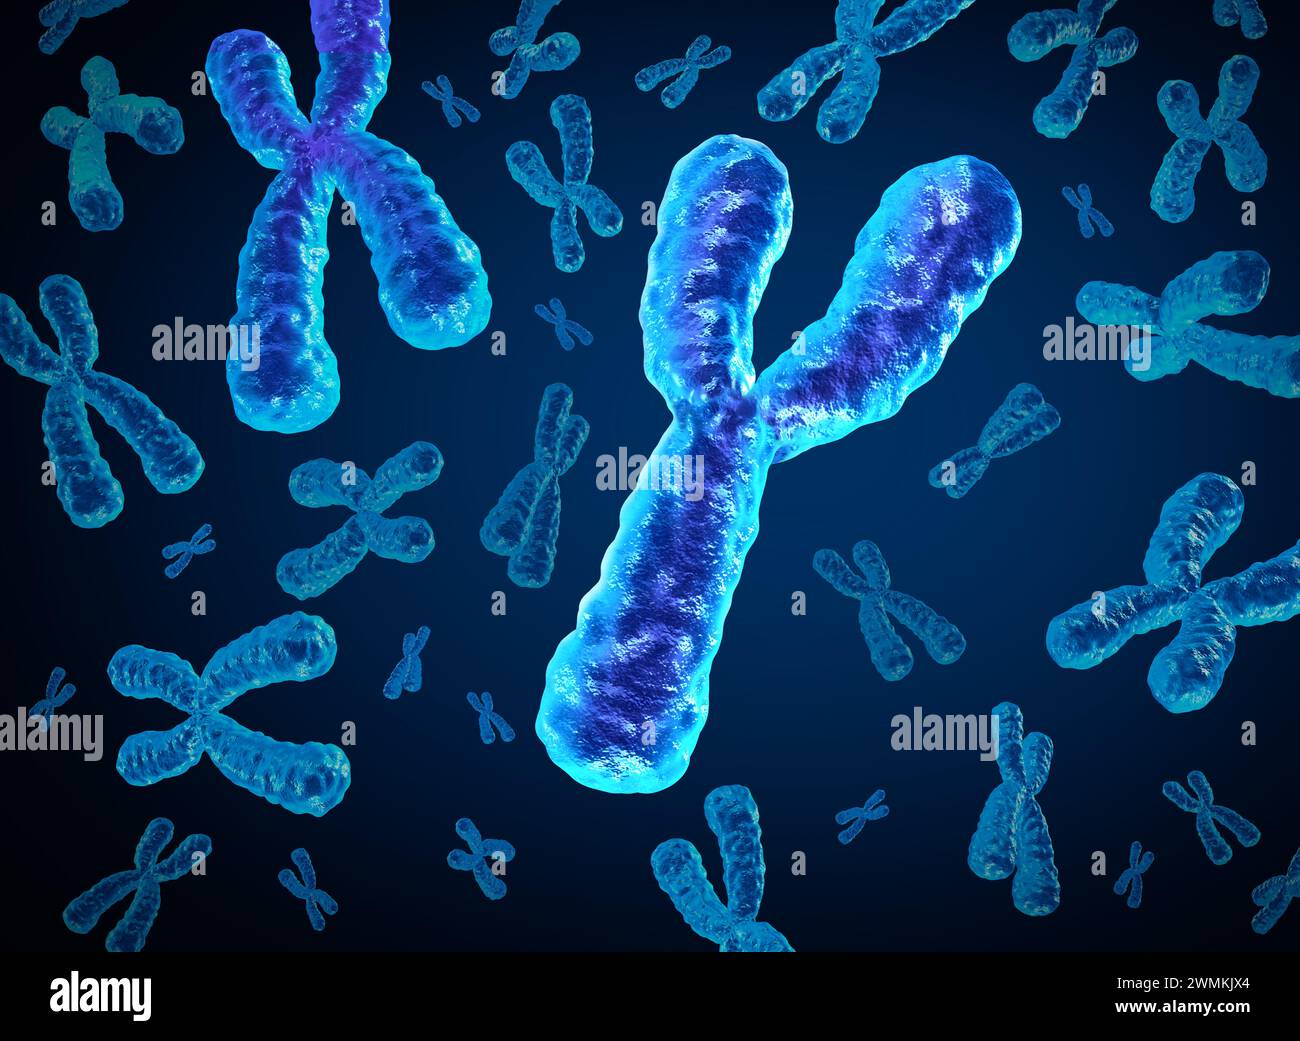 Cromosoma Y che scompare e cromosomi Y che si estinguono come concetto per una struttura x biologia umana contenente informazioni genetiche sul dna come medico Foto Stock